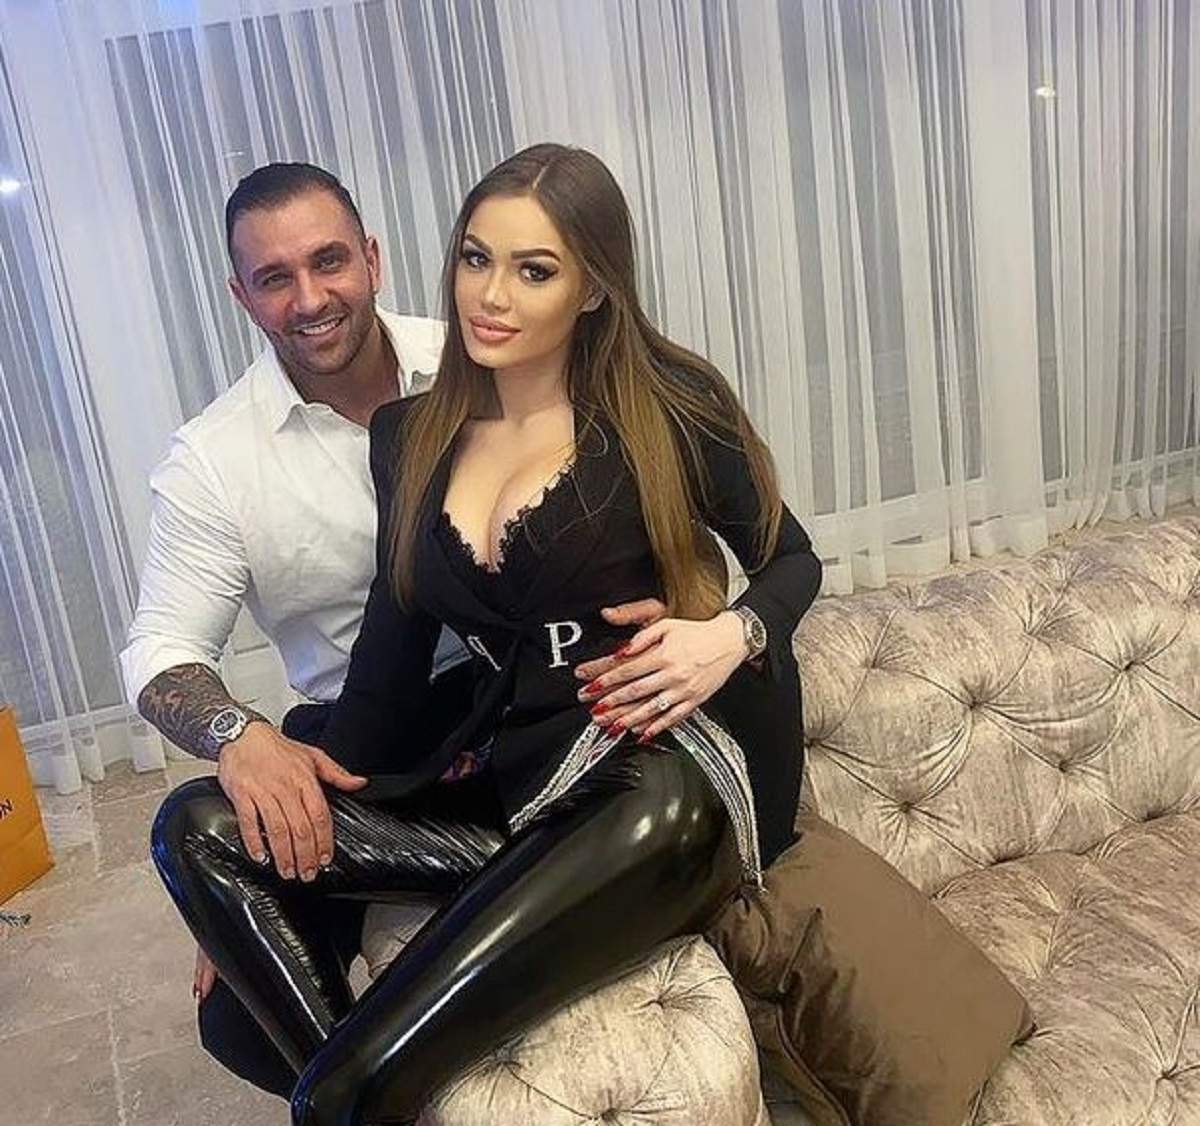 Alex Bodi și iubita lui se află pe canapea. Daria îi stă în brațe afaceristului și amândoi zâmbesc larg.